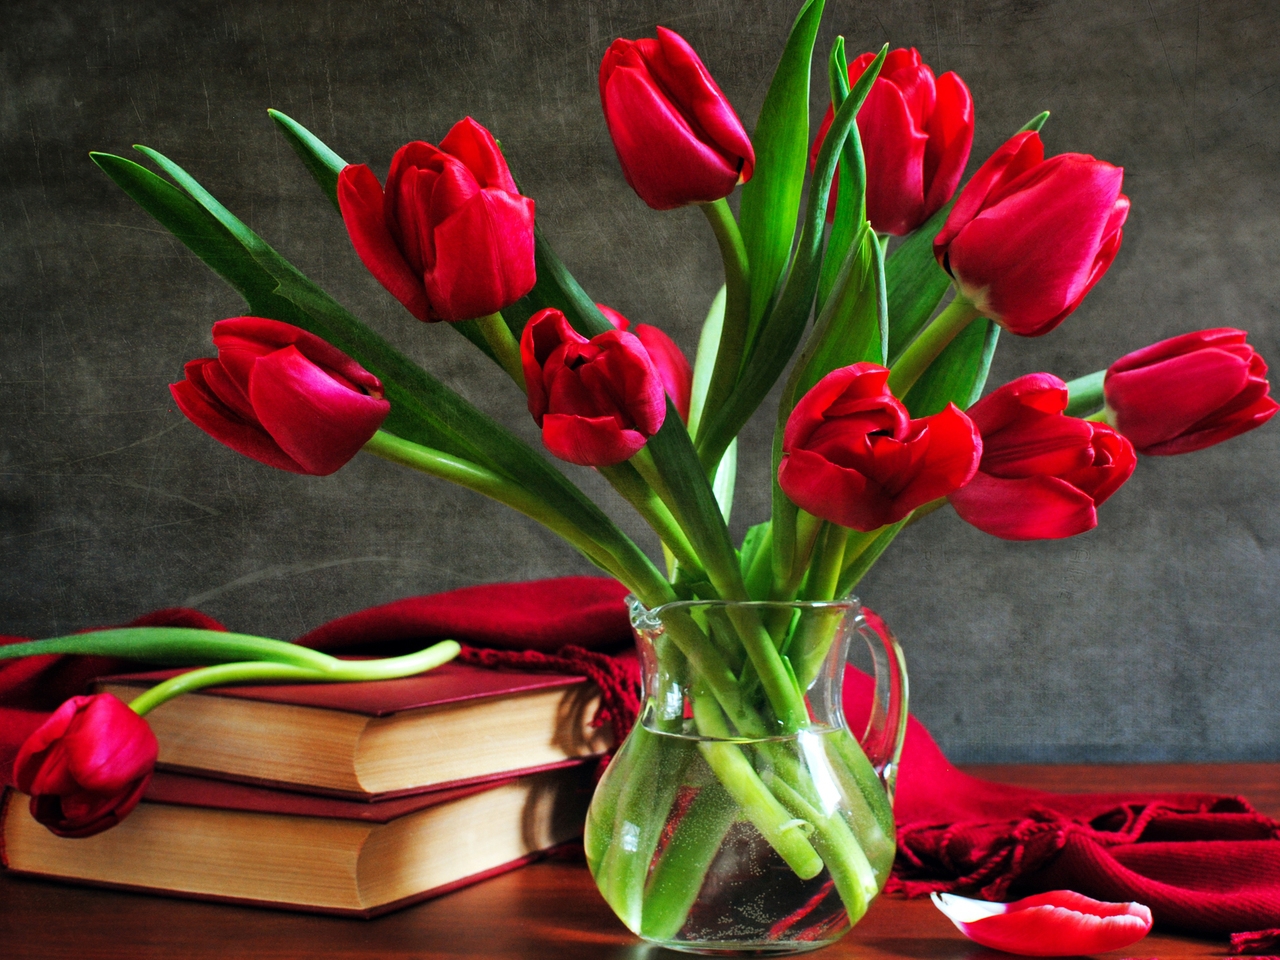 bouquets, flowers, plants, tulips cellphone